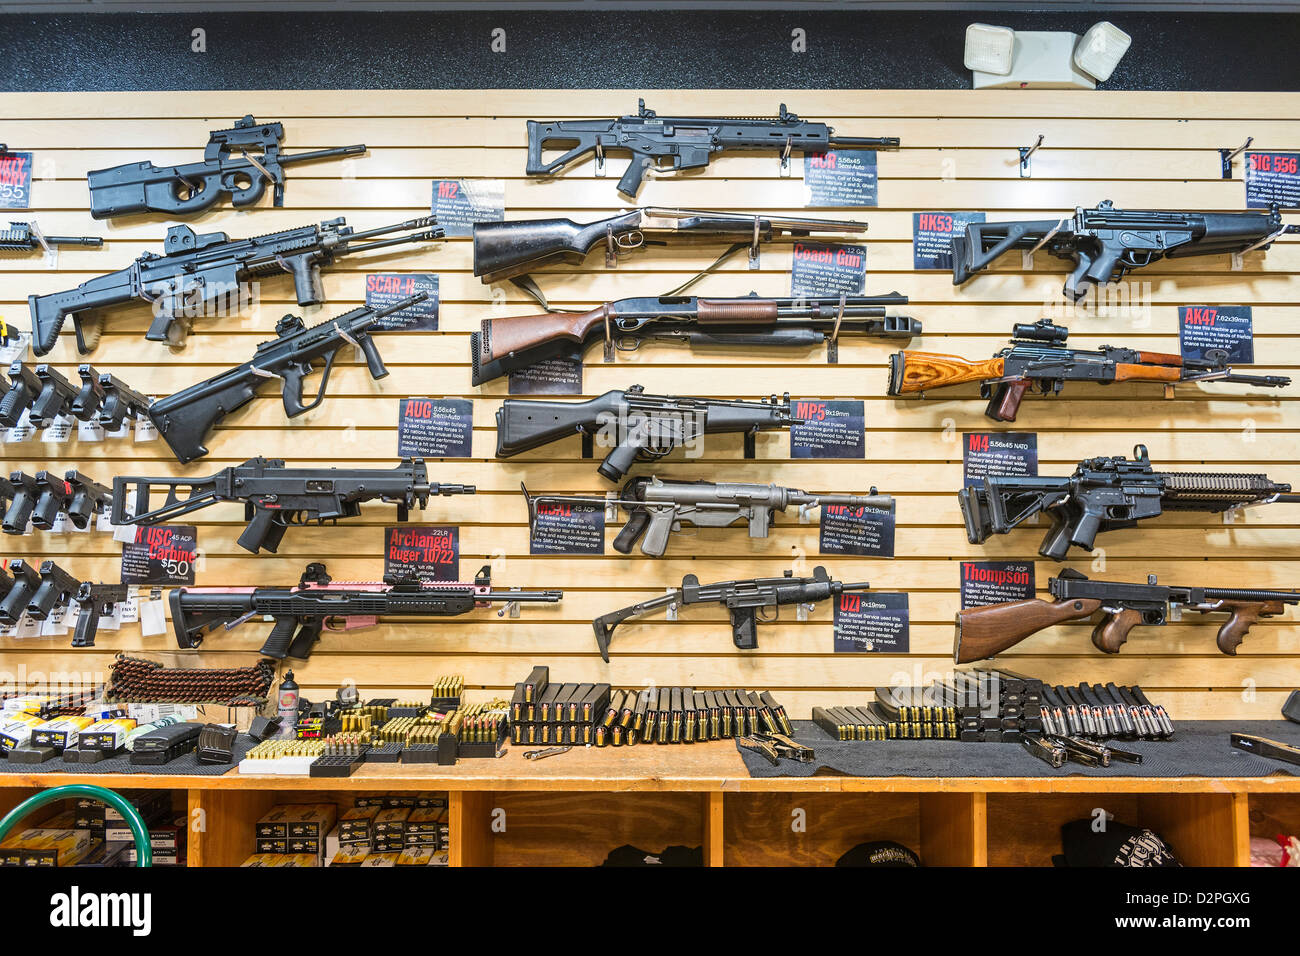 Una gran variedad de pistolas, rifles y armas en un almacén de la pistola. Foto de stock